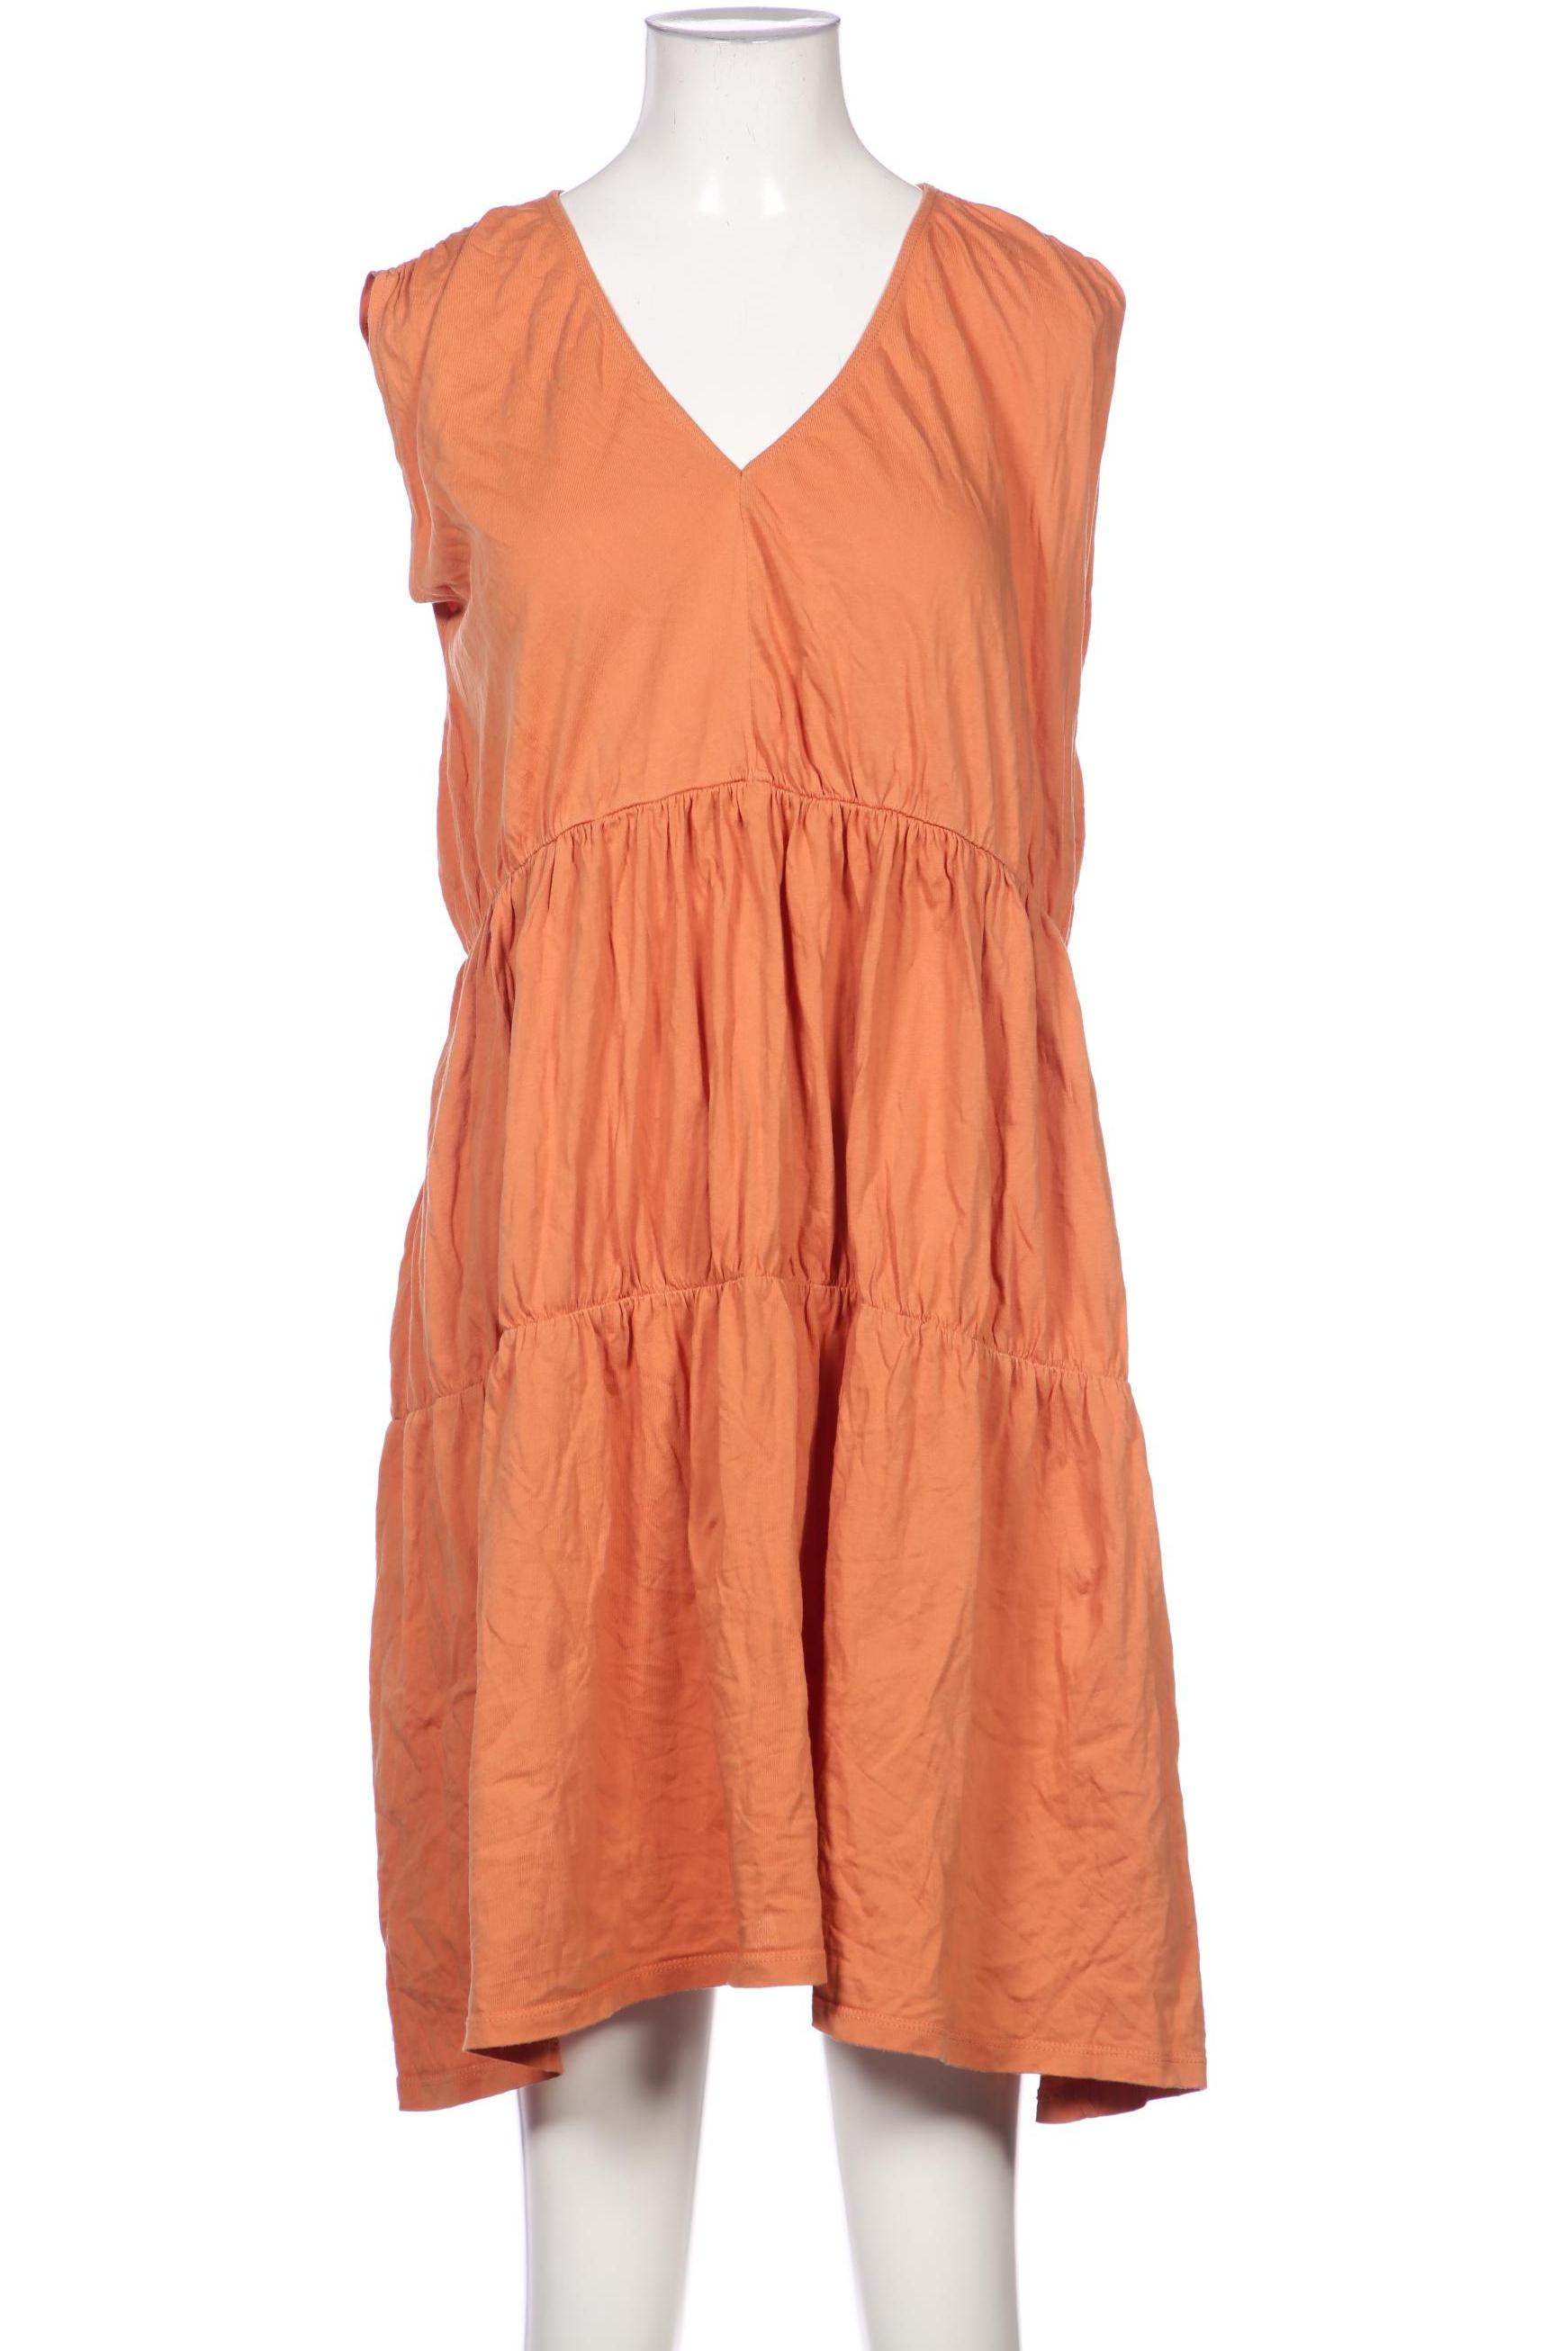 ZARA Damen Kleid, orange von ZARA